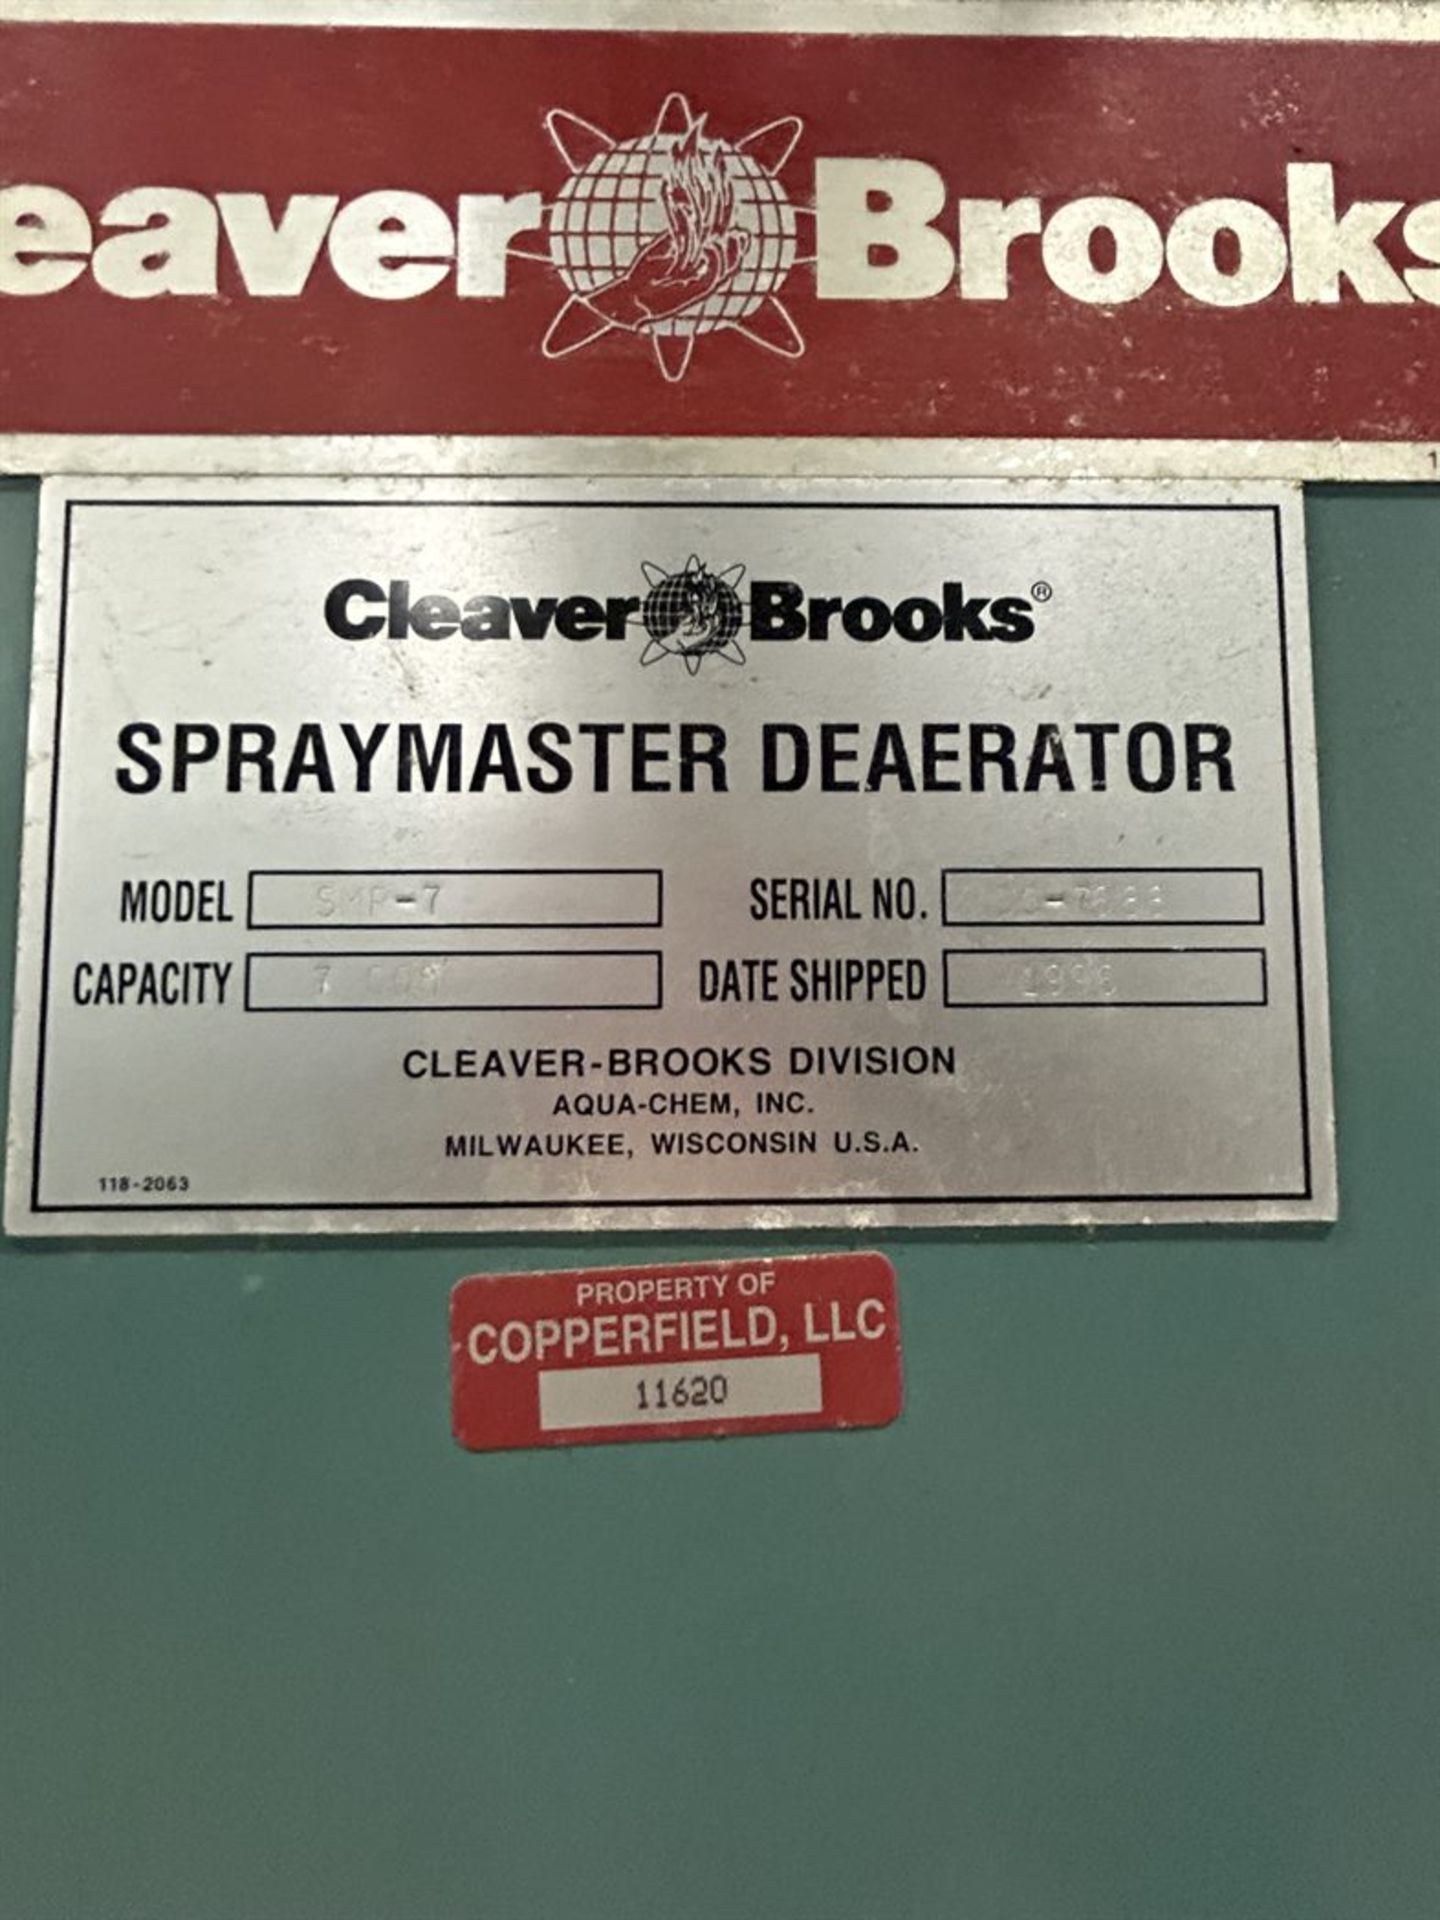 CLEAVER BROOKS SMP-7 Spraymaster Deaerator, s/n DC-7688 - Image 6 of 6